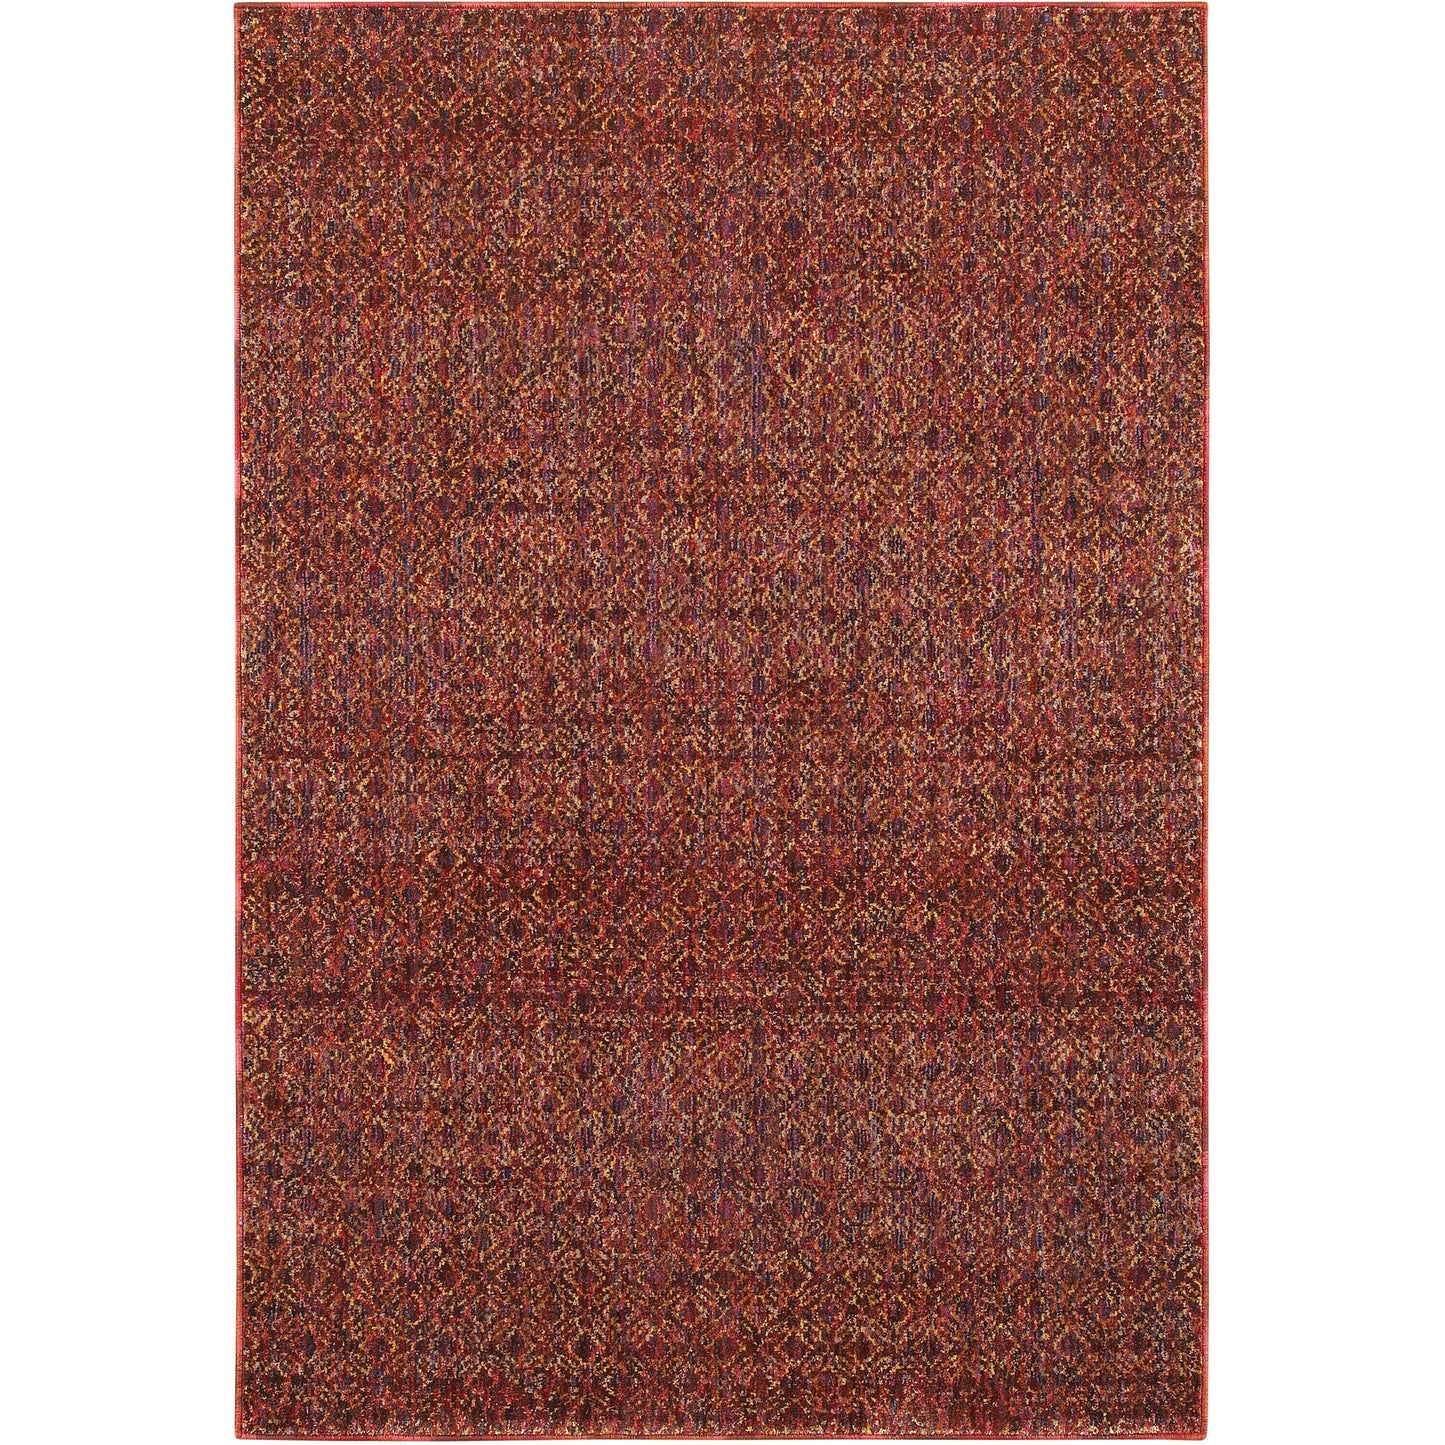 ATLAS 8048K Red, Rust Rug - Oriental Weavers